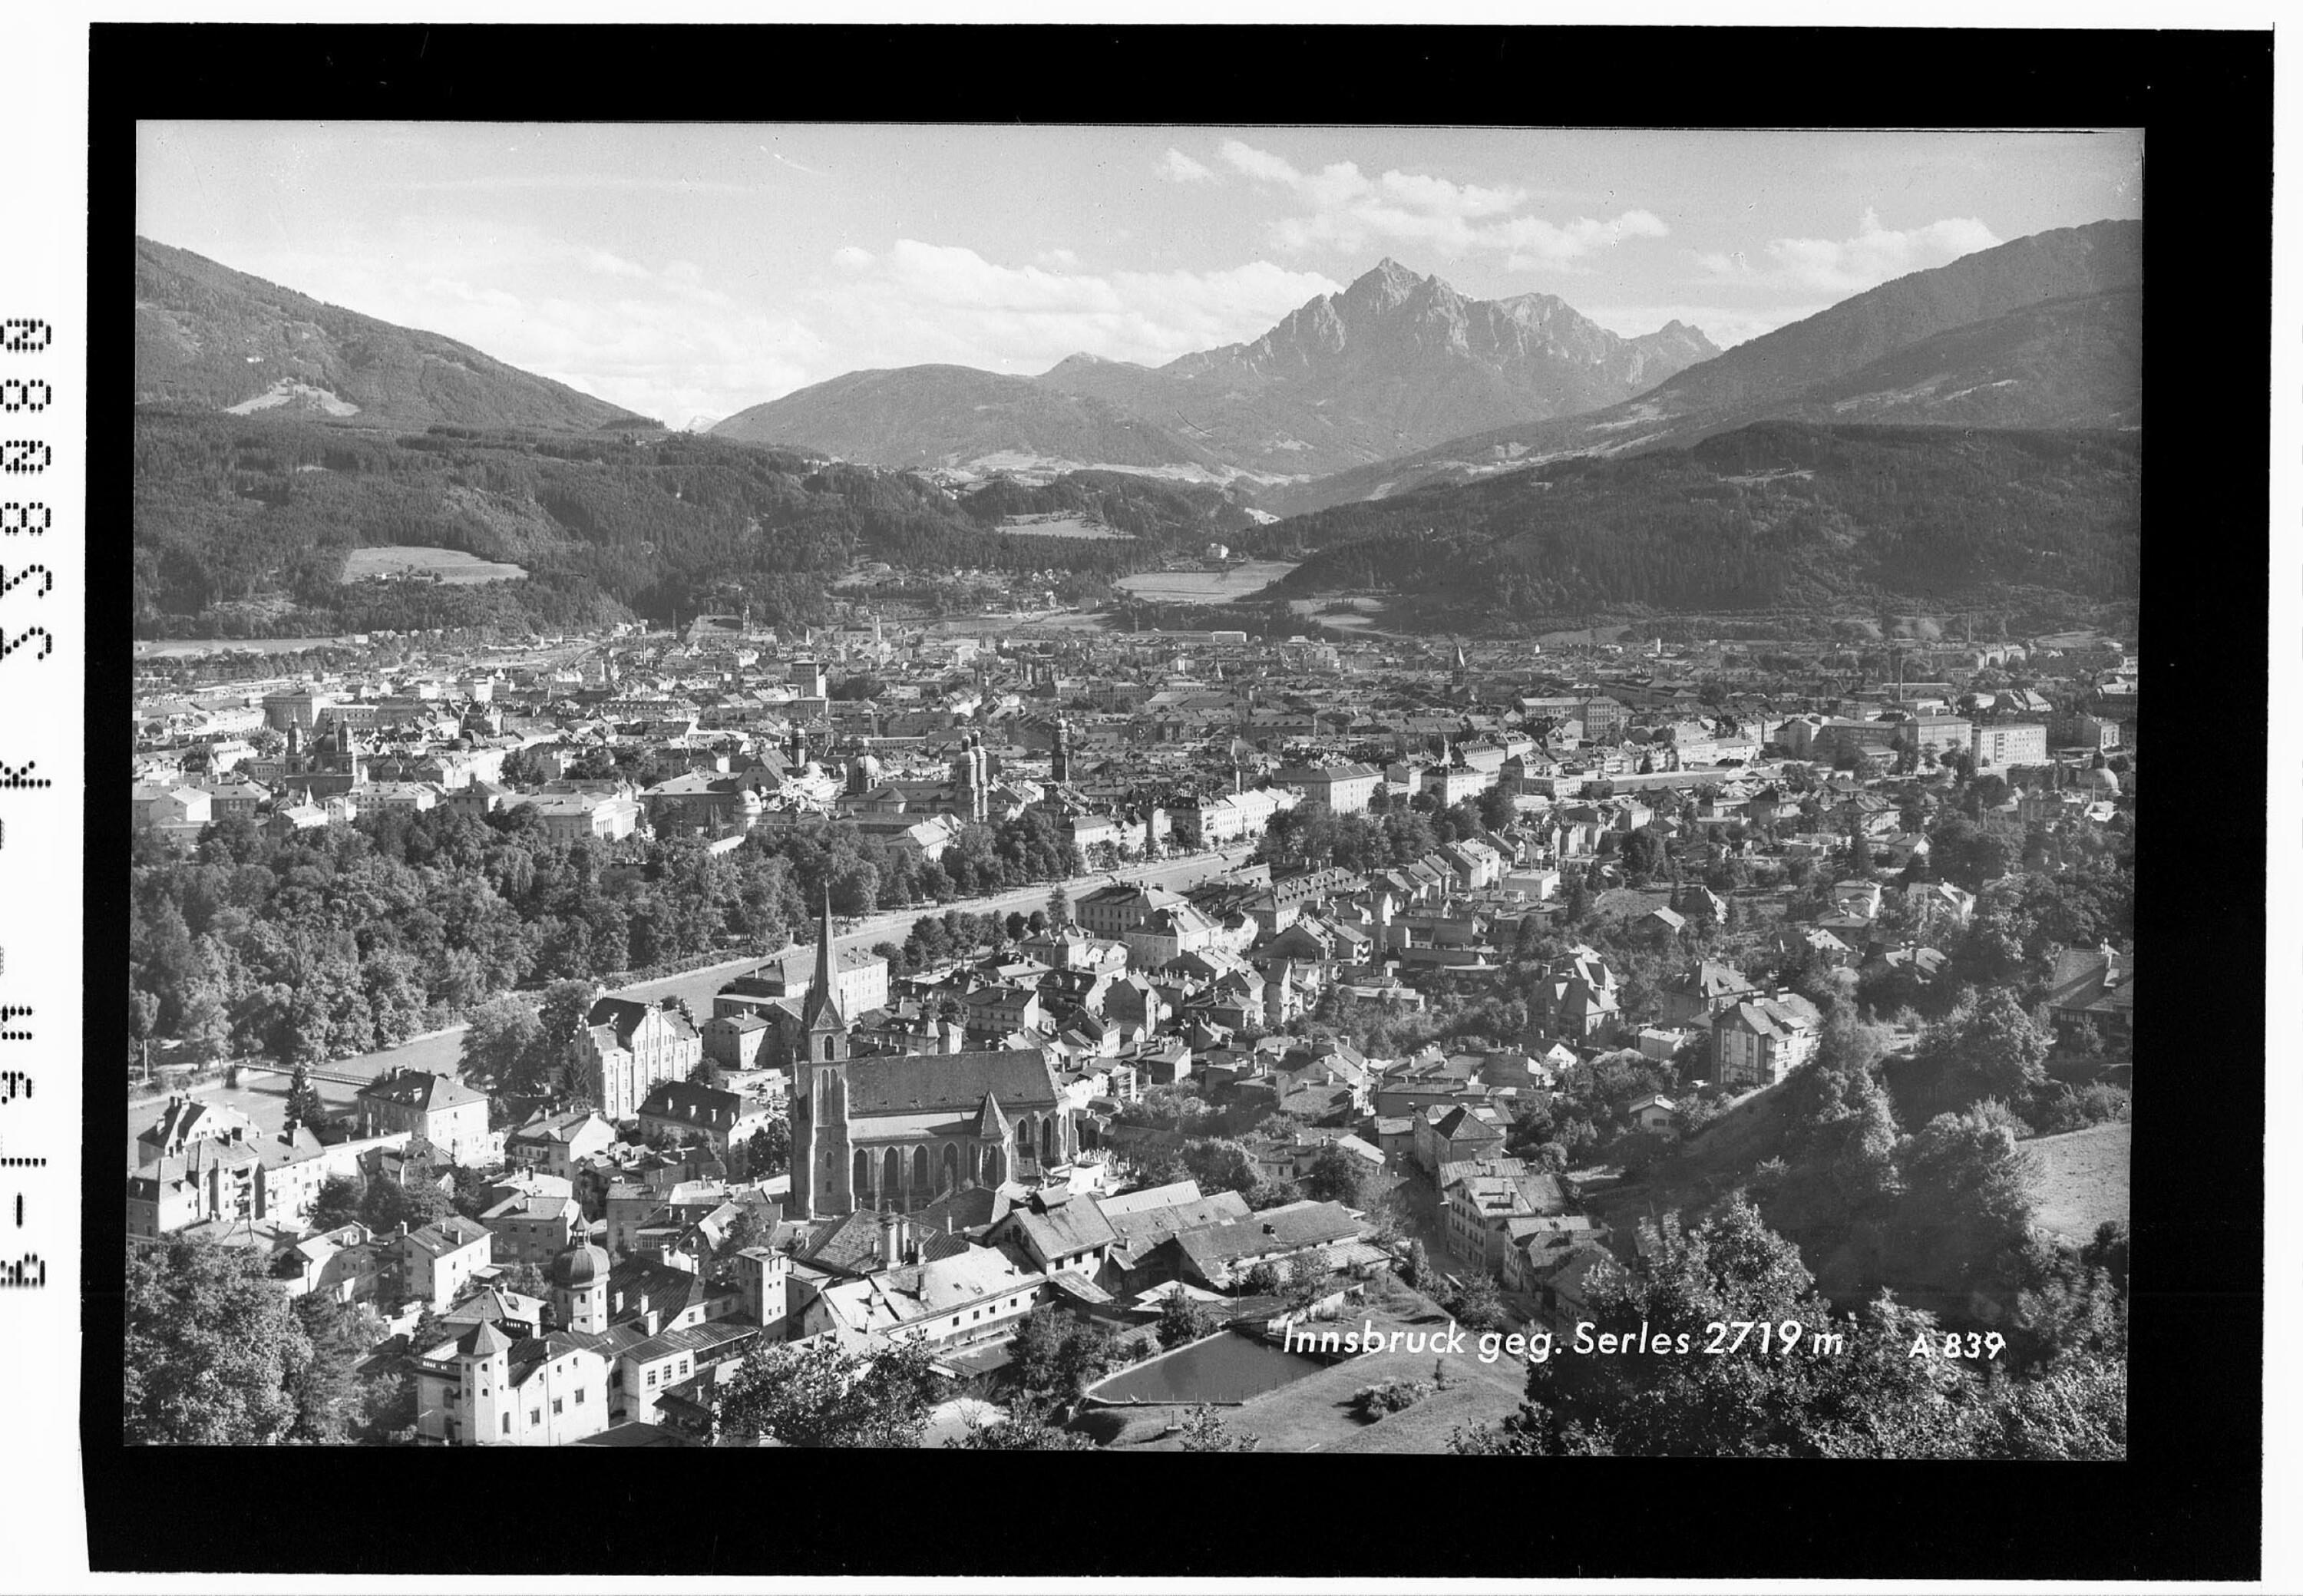 Innsbruck gegen Serles 2719 m></div>


    <hr>
    <div class=